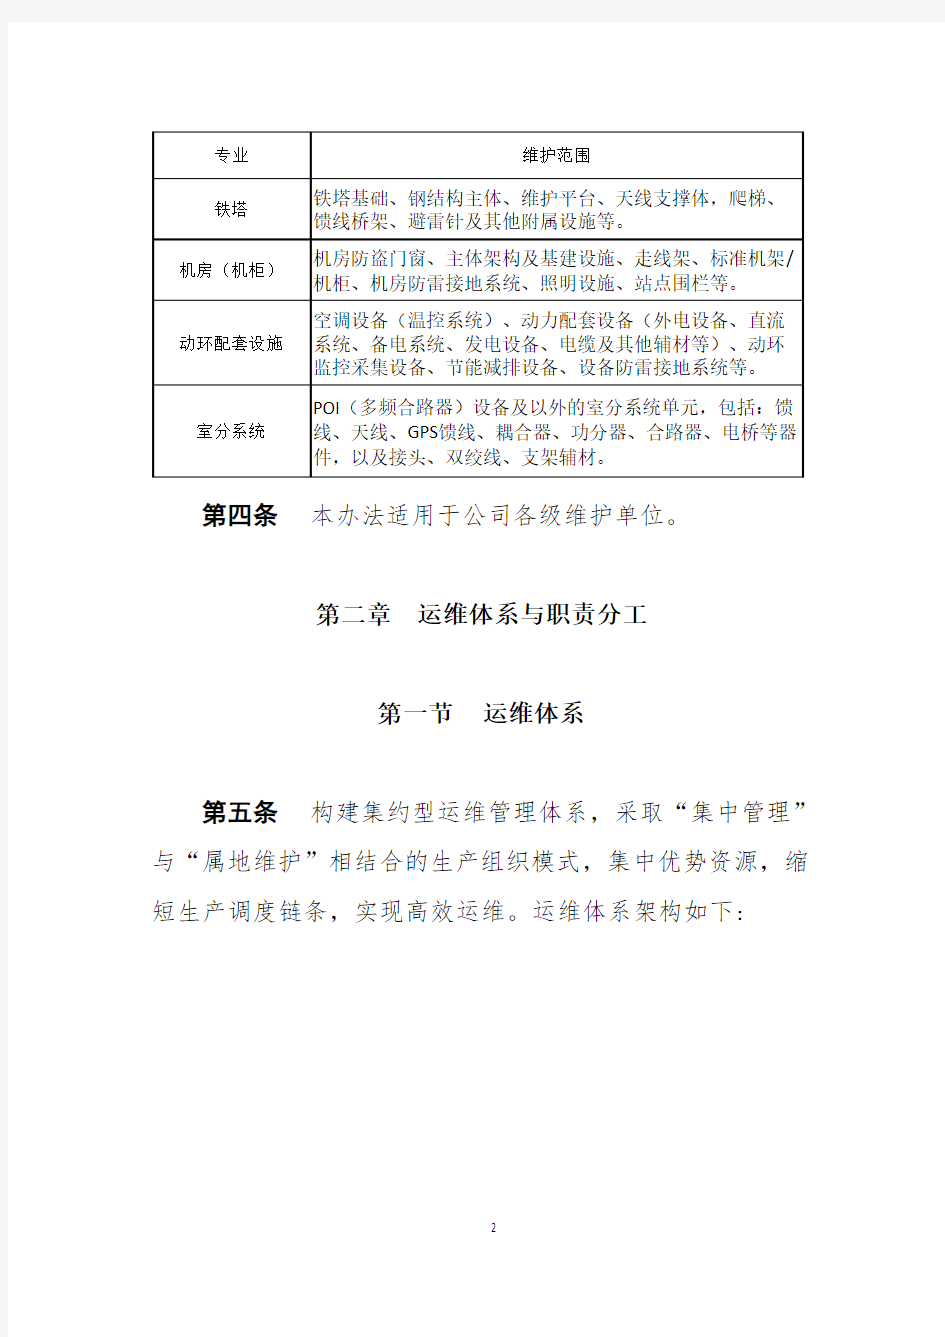 中国铁塔股份有限公司维护管理办法(试行)